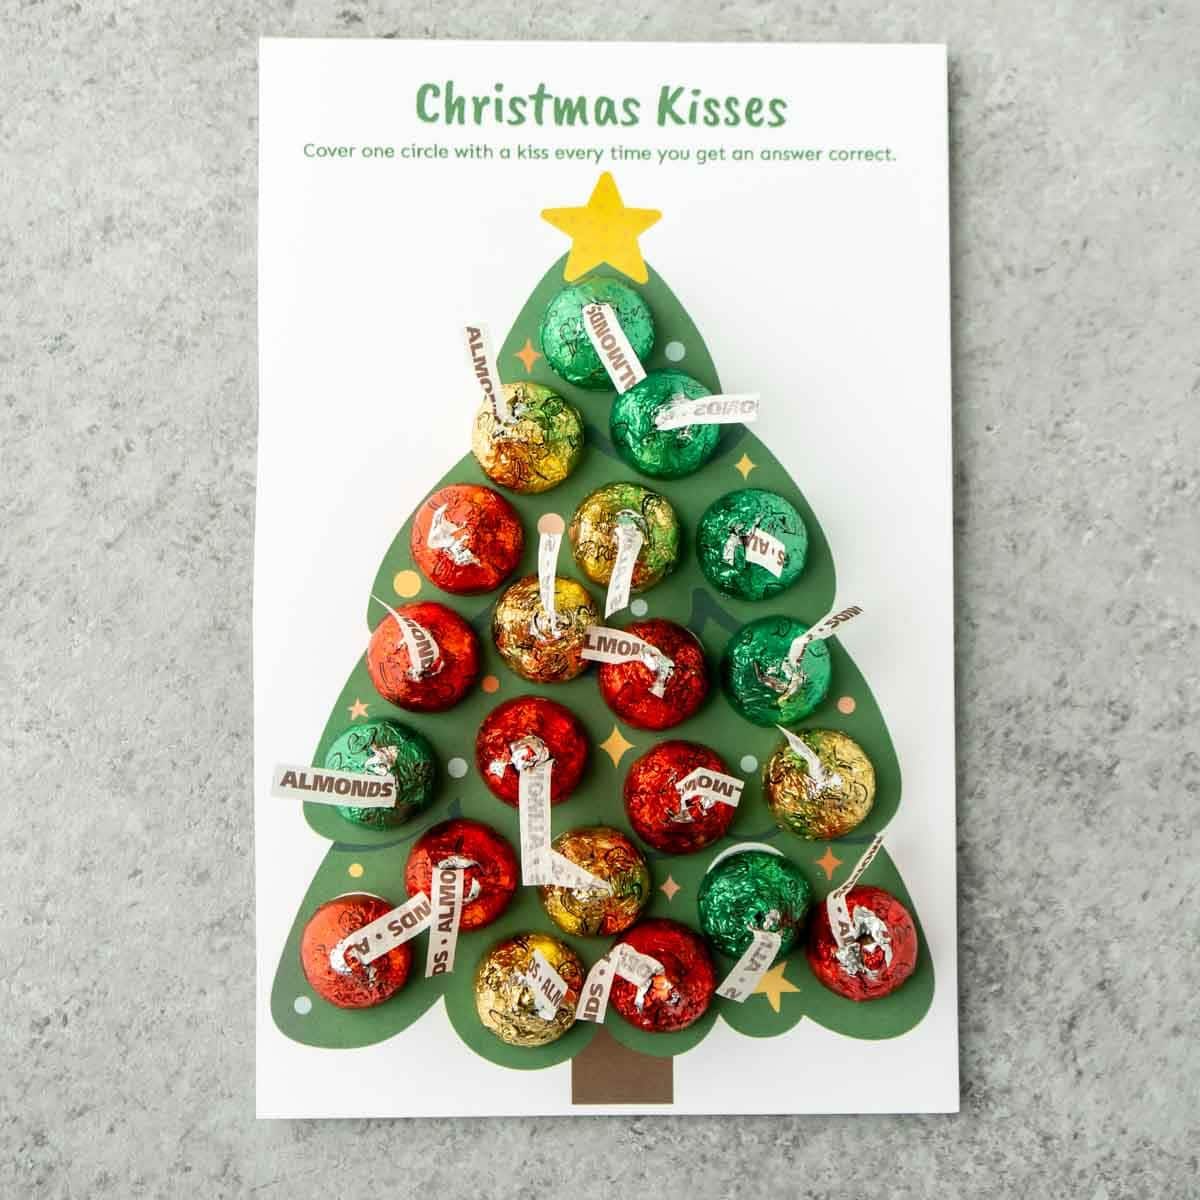 Christmas Kisses Jeu-questionnaire de Noël avec Hershey